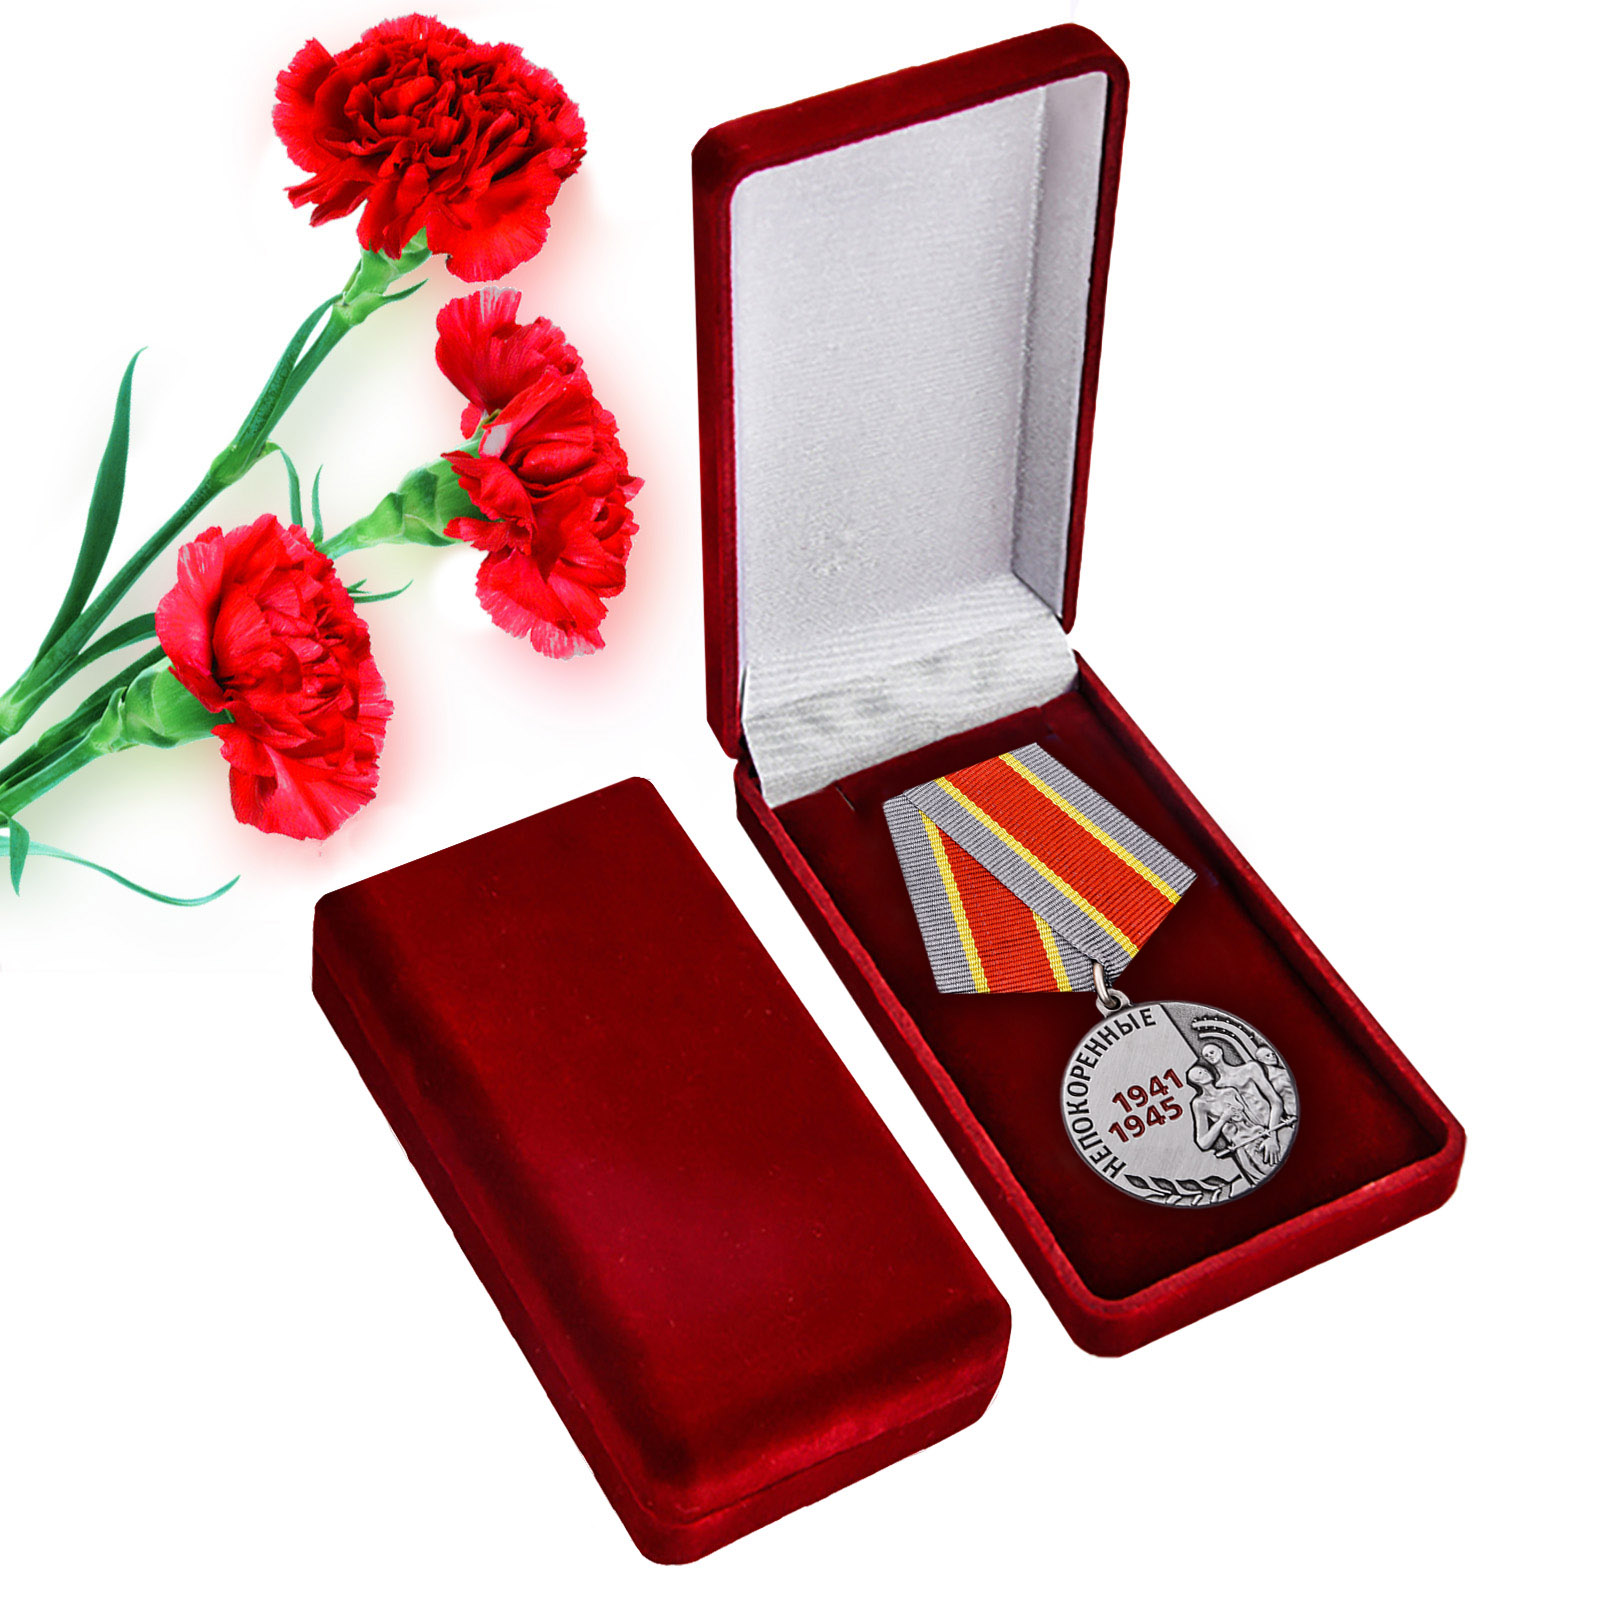 Купить латунную медаль Узникам концлагерей на 75 лет Победы в подарок